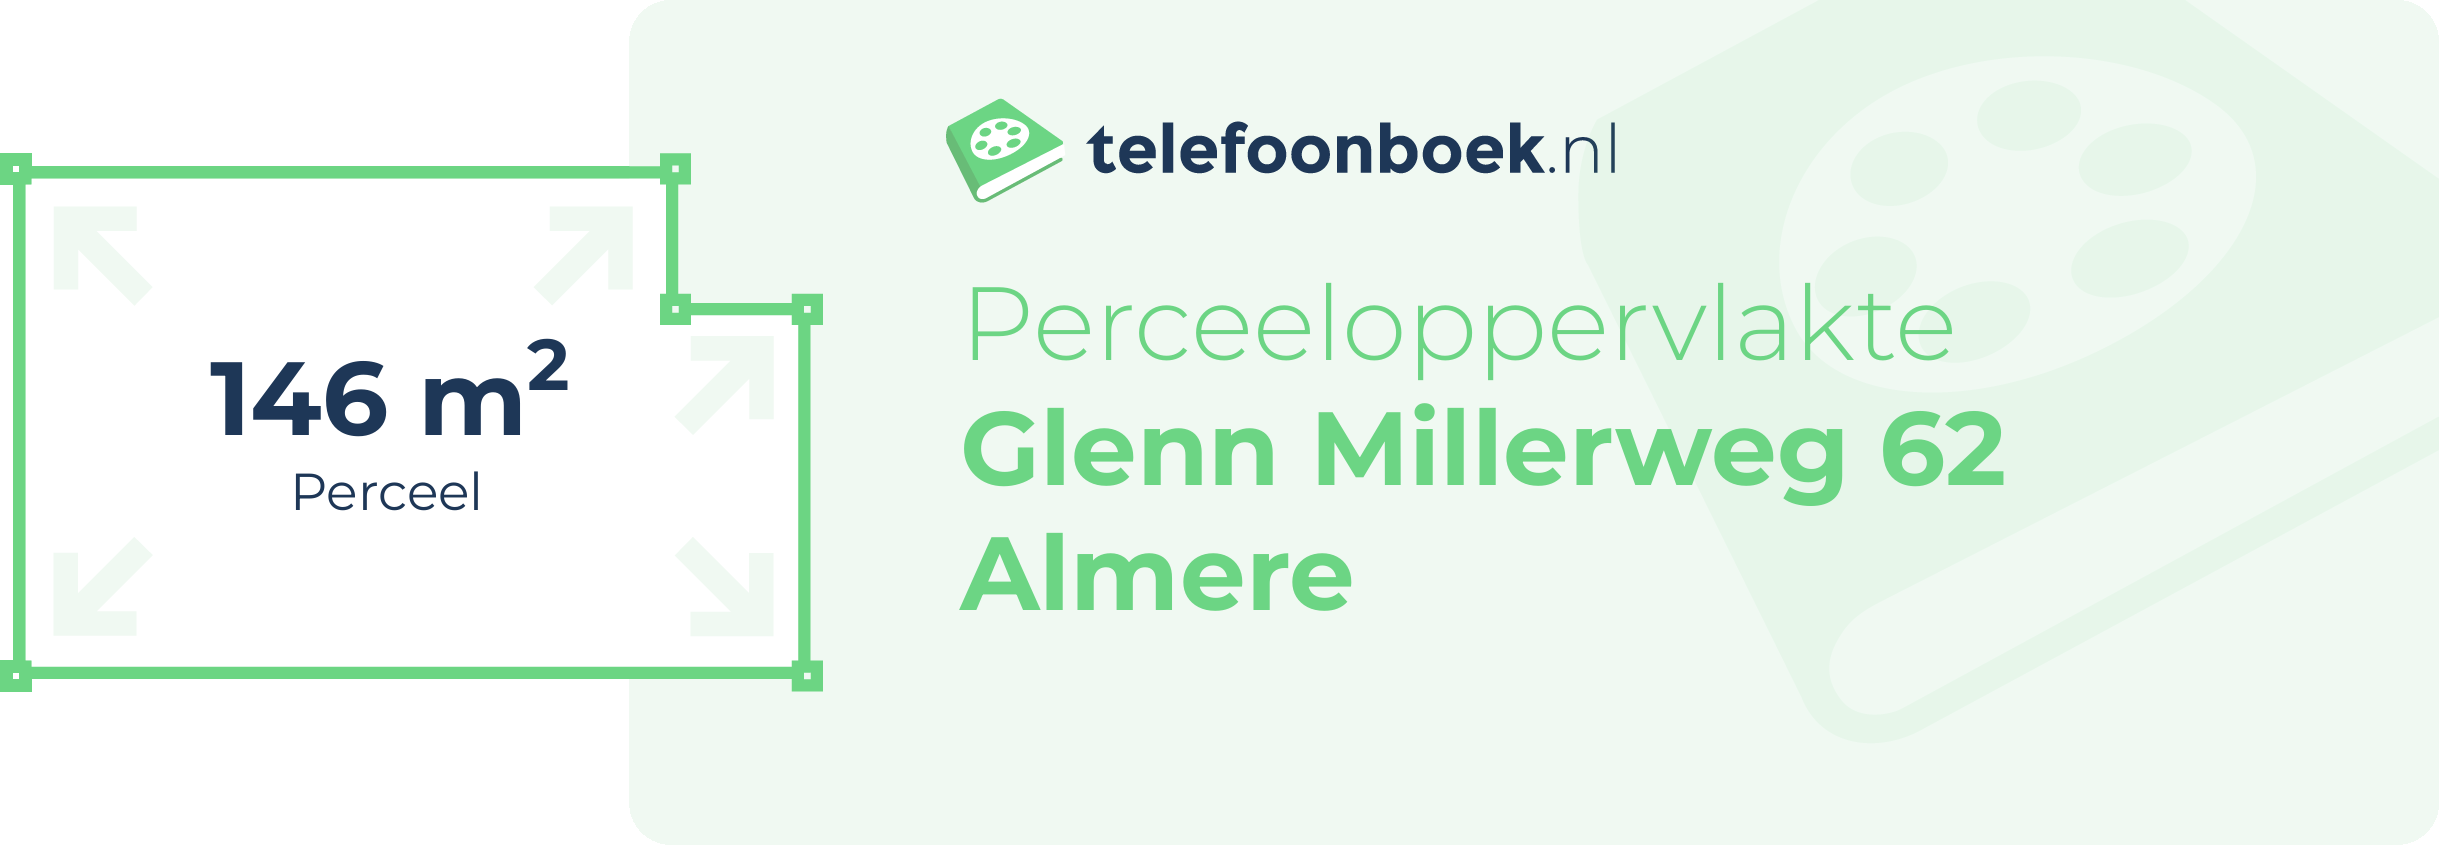 Perceeloppervlakte Glenn Millerweg 62 Almere